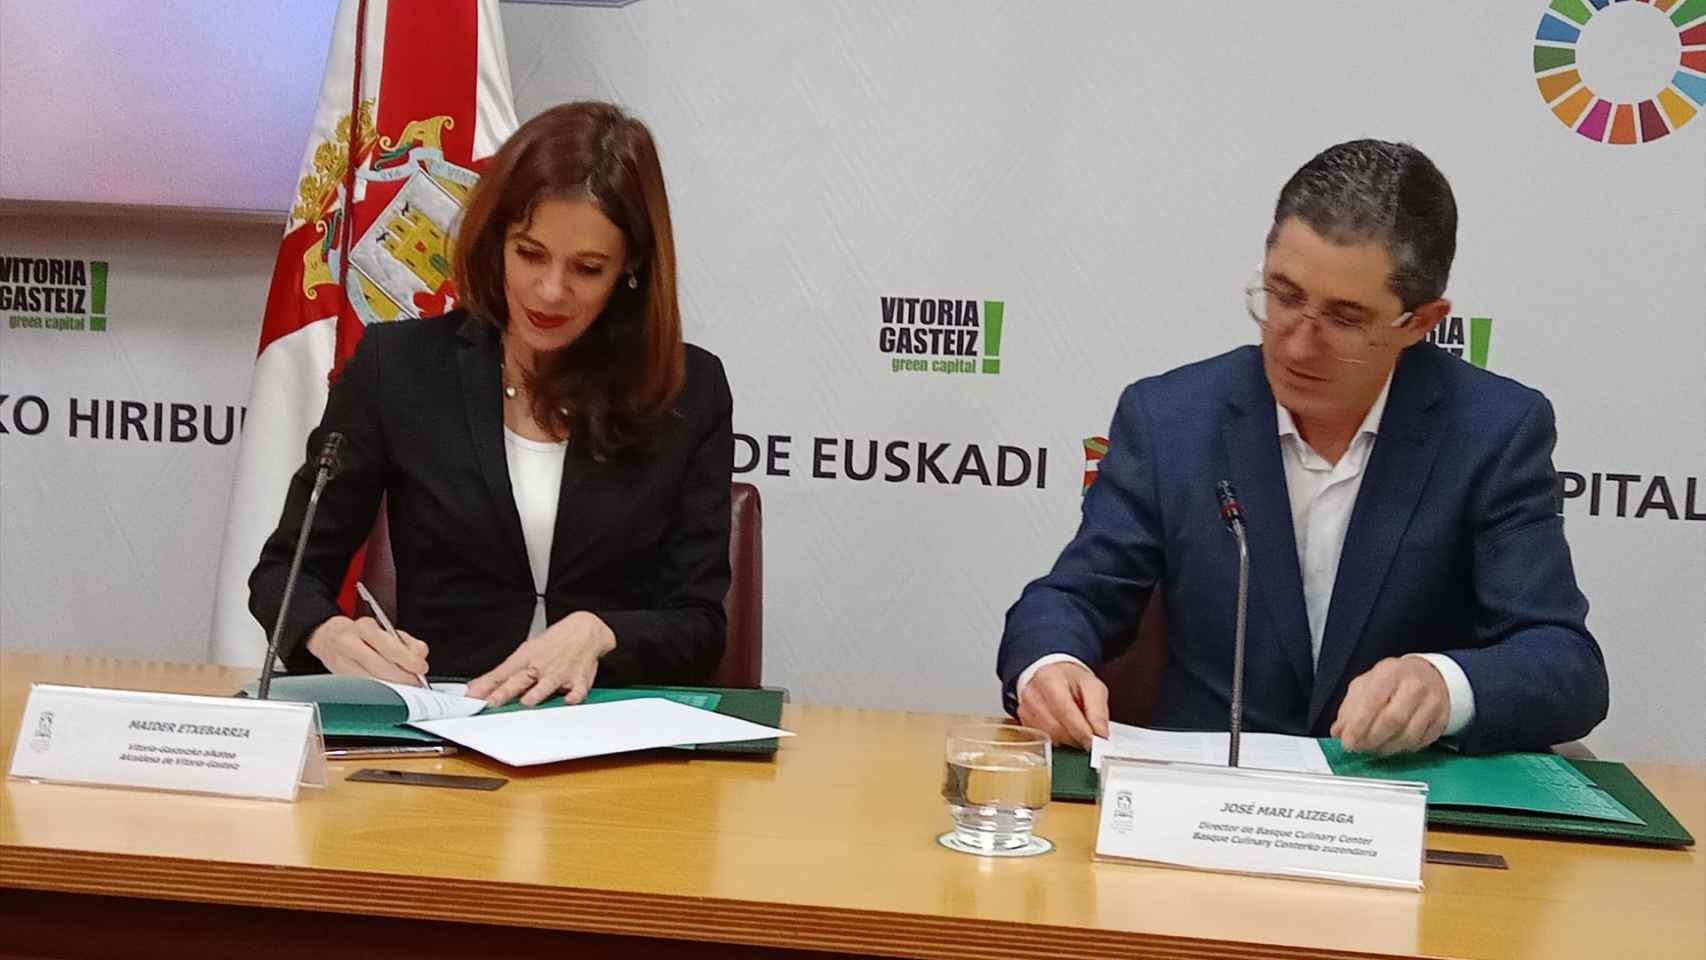 La alcaldesa de Vitoria-Gasteiz, Maider Etxebarria, y el director de Basque Culinary Center, Joxe Mari Aizega, firman el acuerdo para ubicar la sede del EDA Drinks & Wine Campus en Lakua.